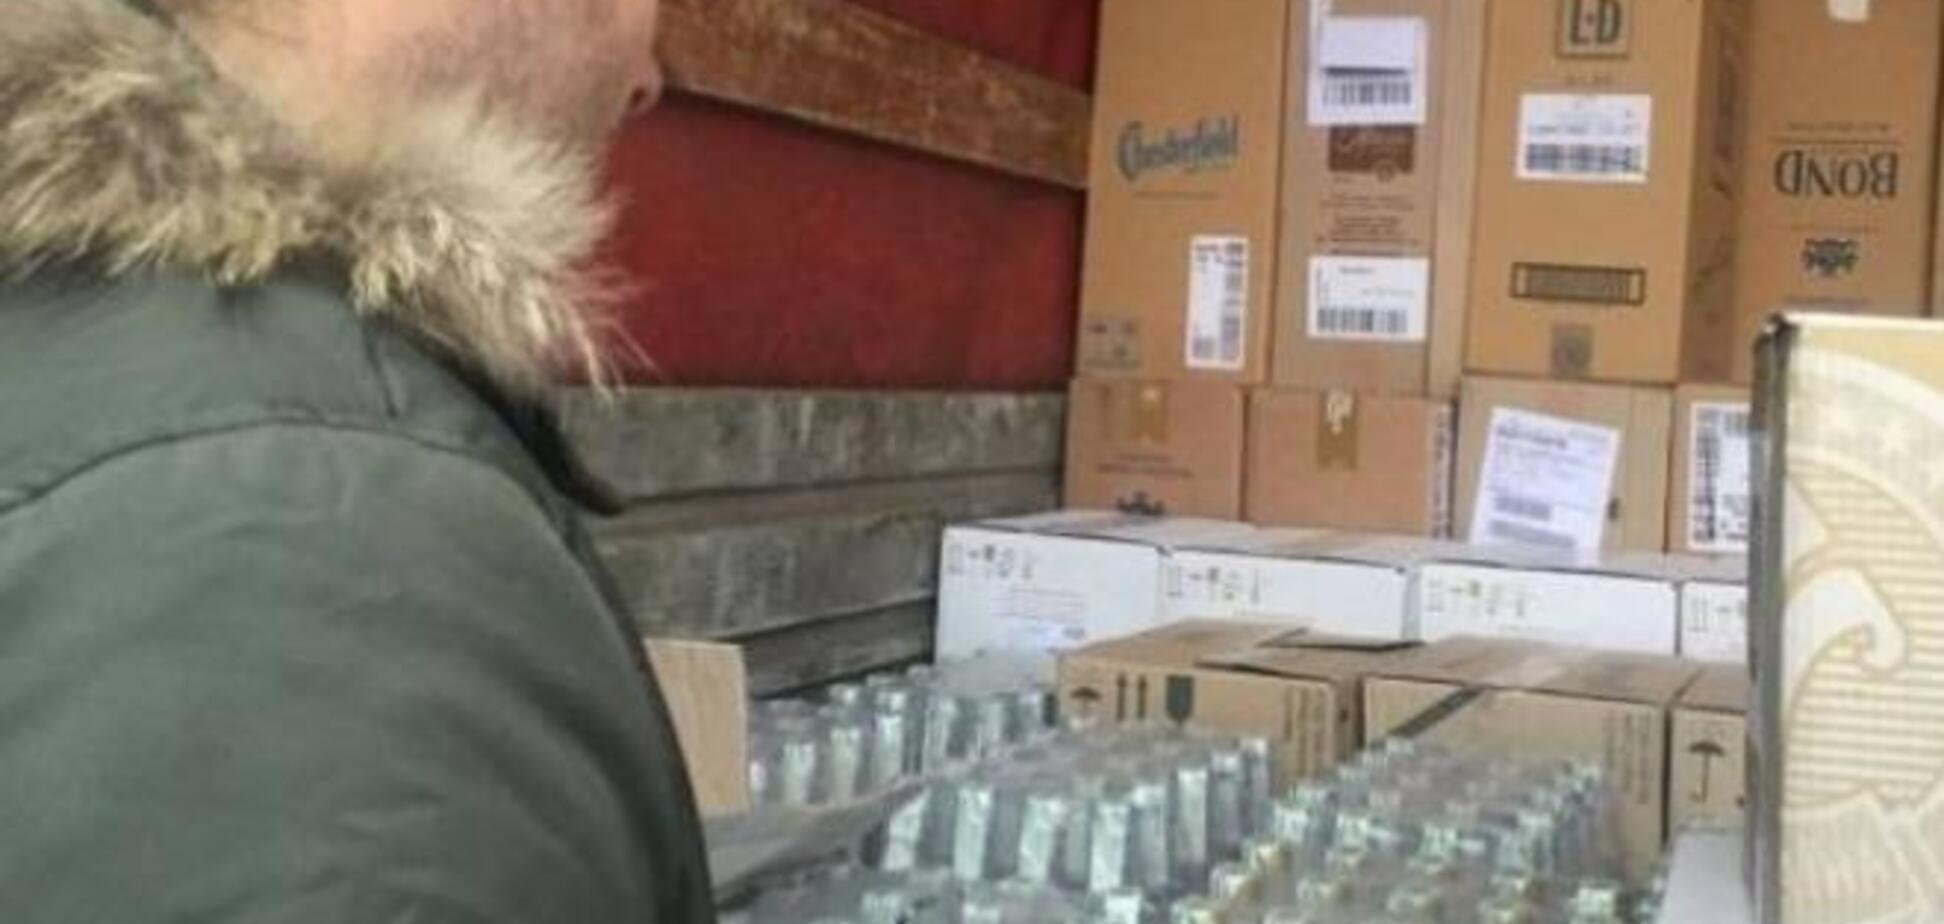 Из оккупированного боевиками Донецка пытались вывезли более 40 тыс бутылок поддельной водки